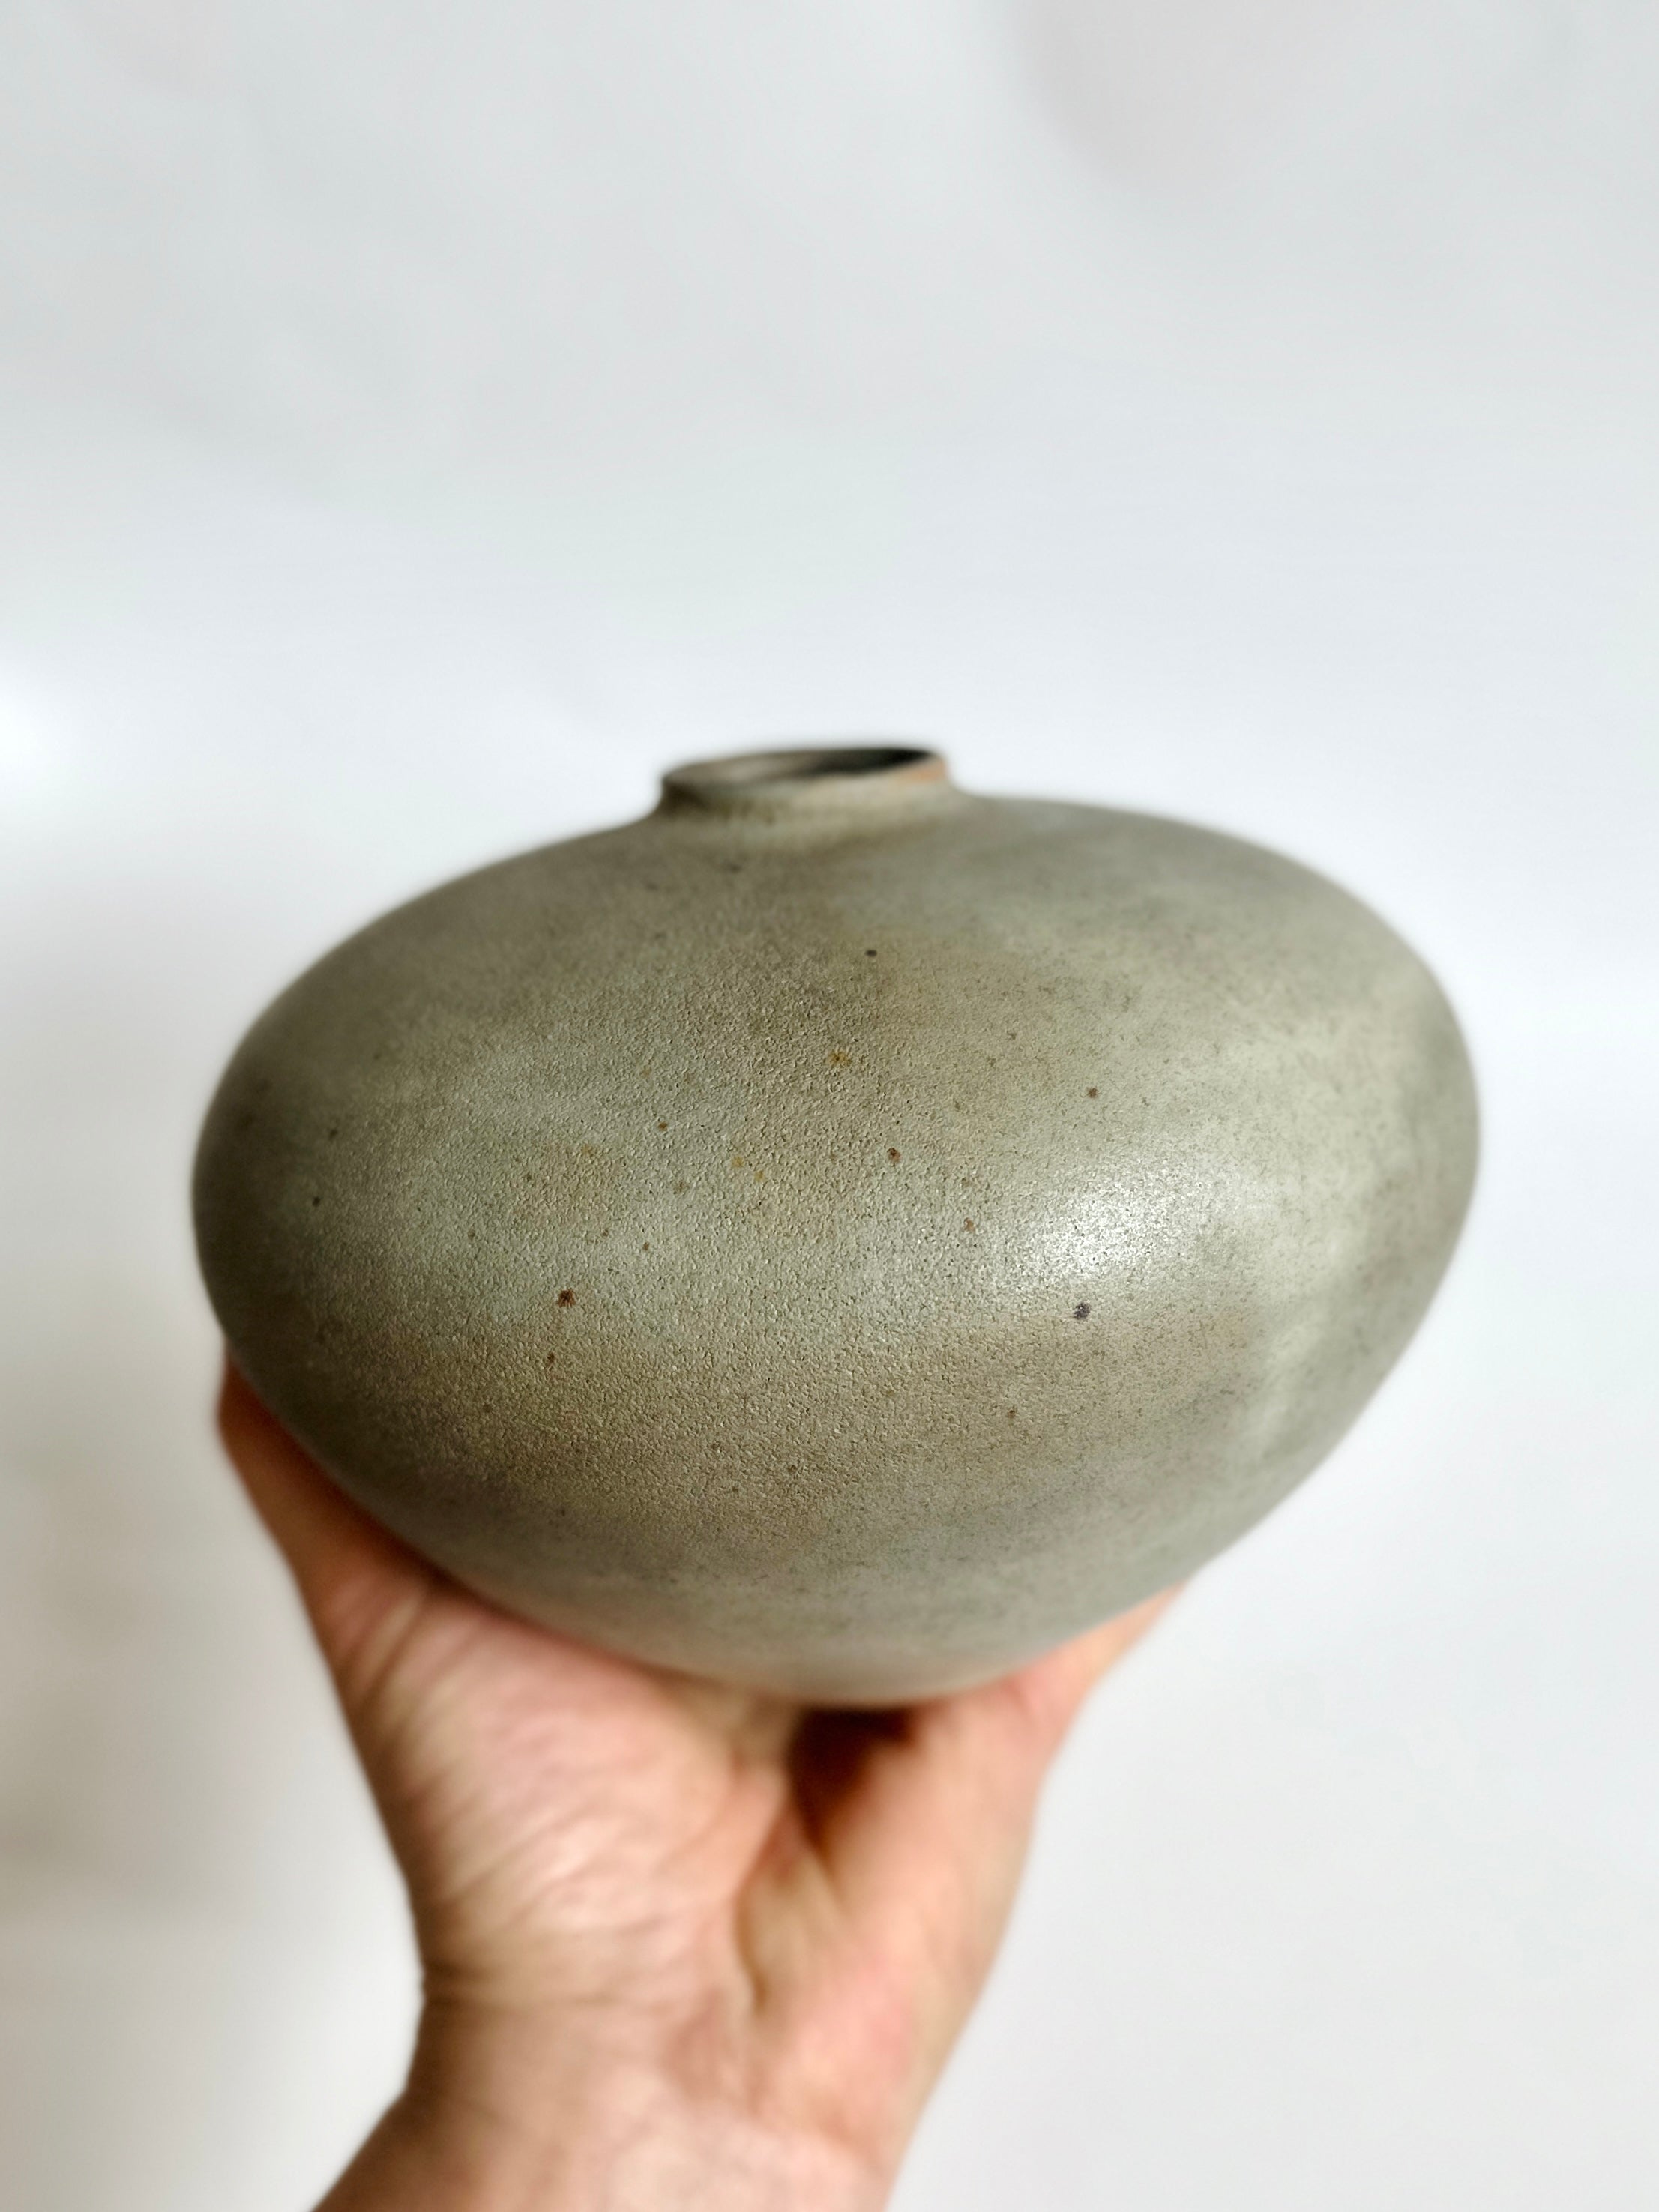 Gray wide vase no. 18